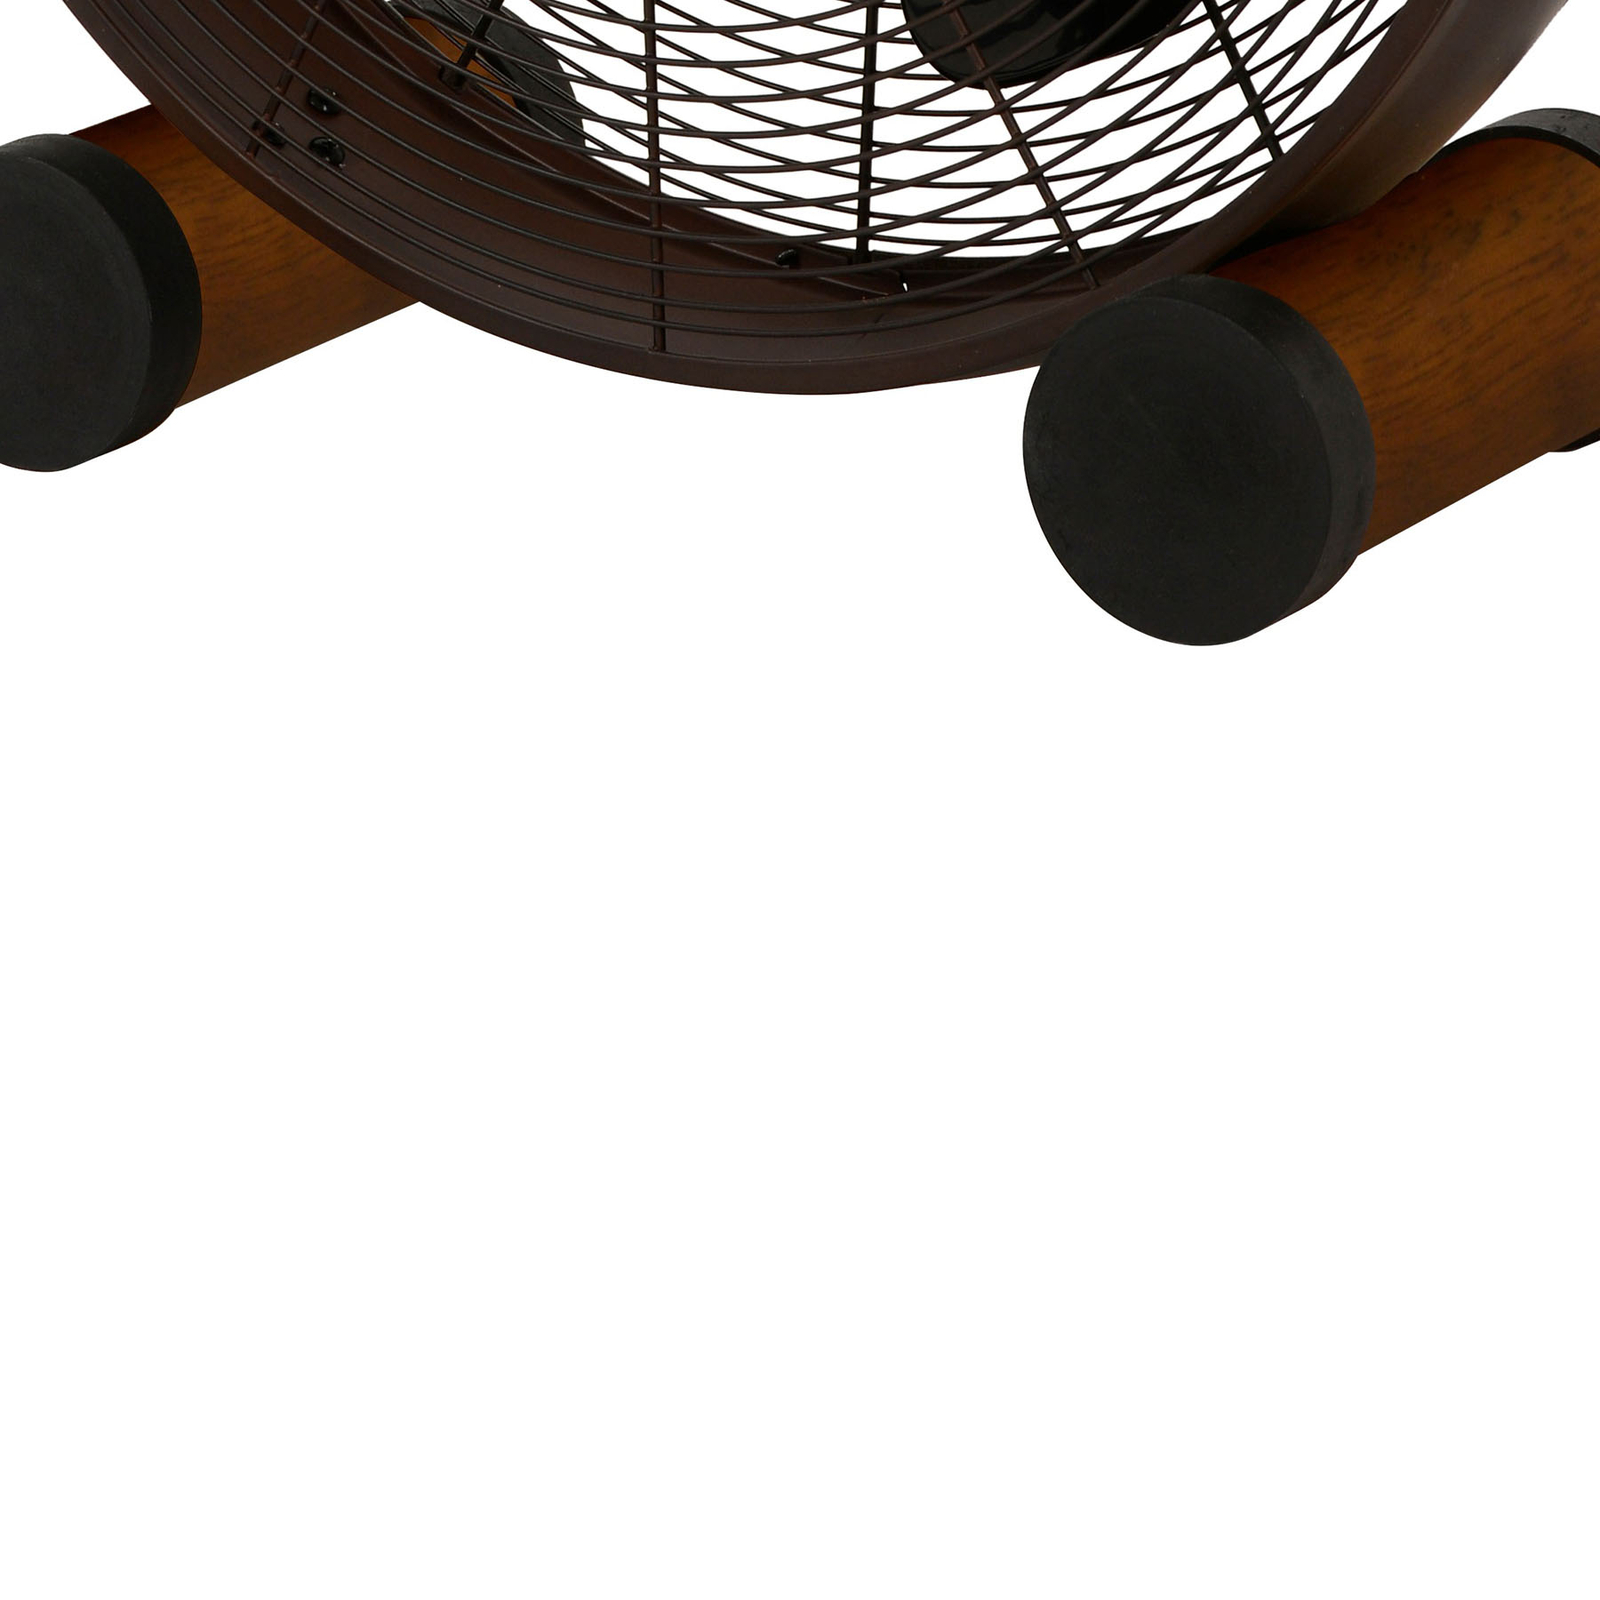 Ventilator de masă Beacon Breeze bronz/noc, Ø 41 cm, silențios